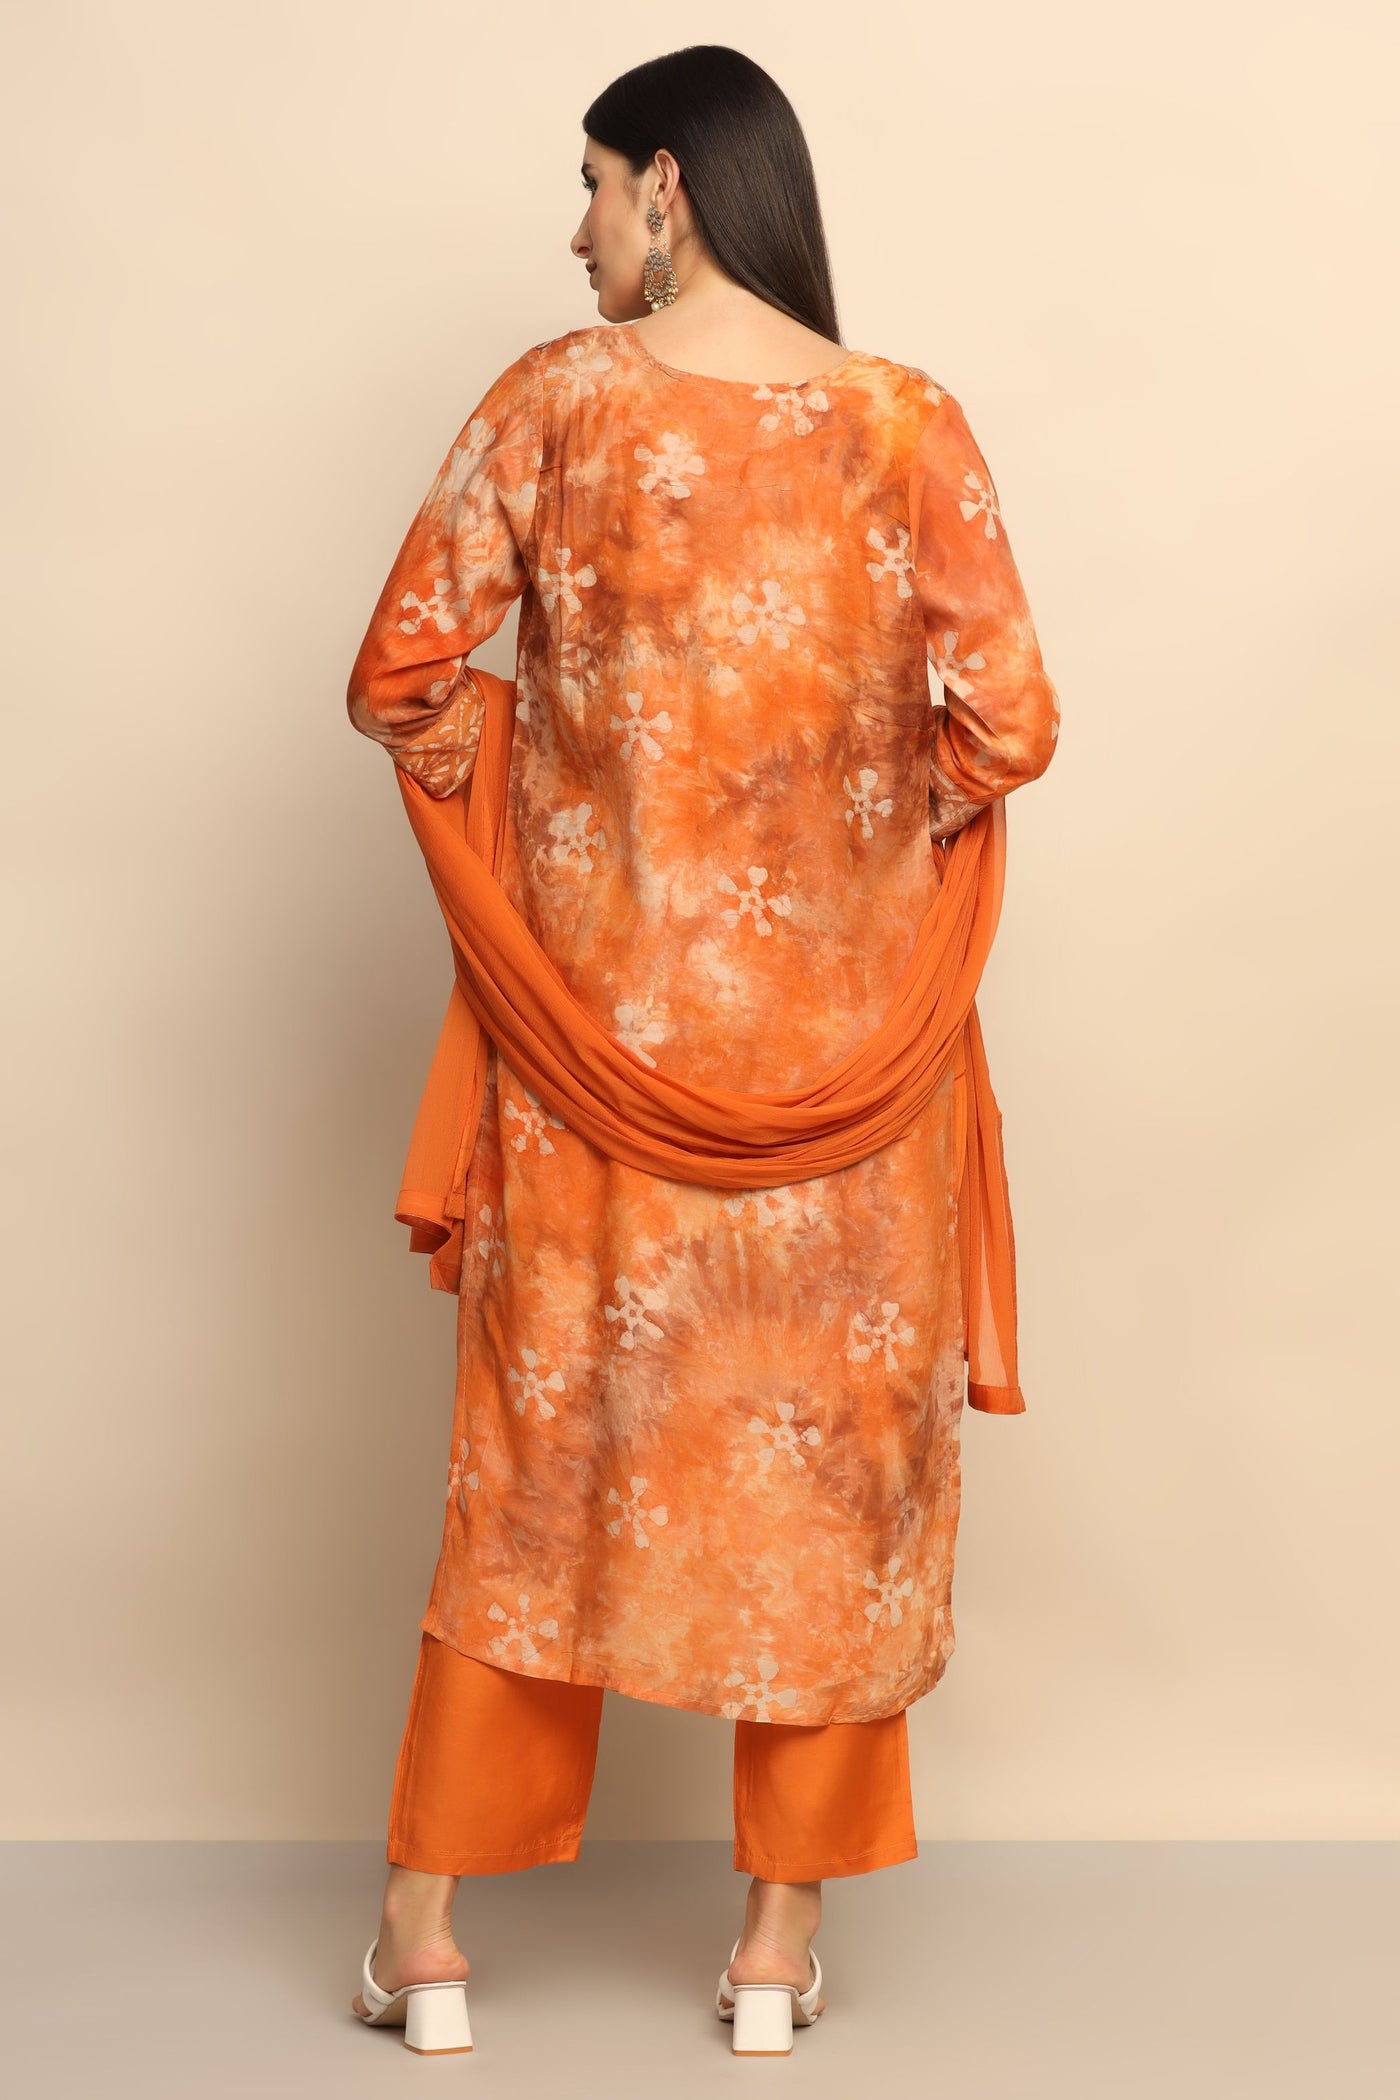 Radiant Orange Sequin Suit - Embrace Unforgettable Style